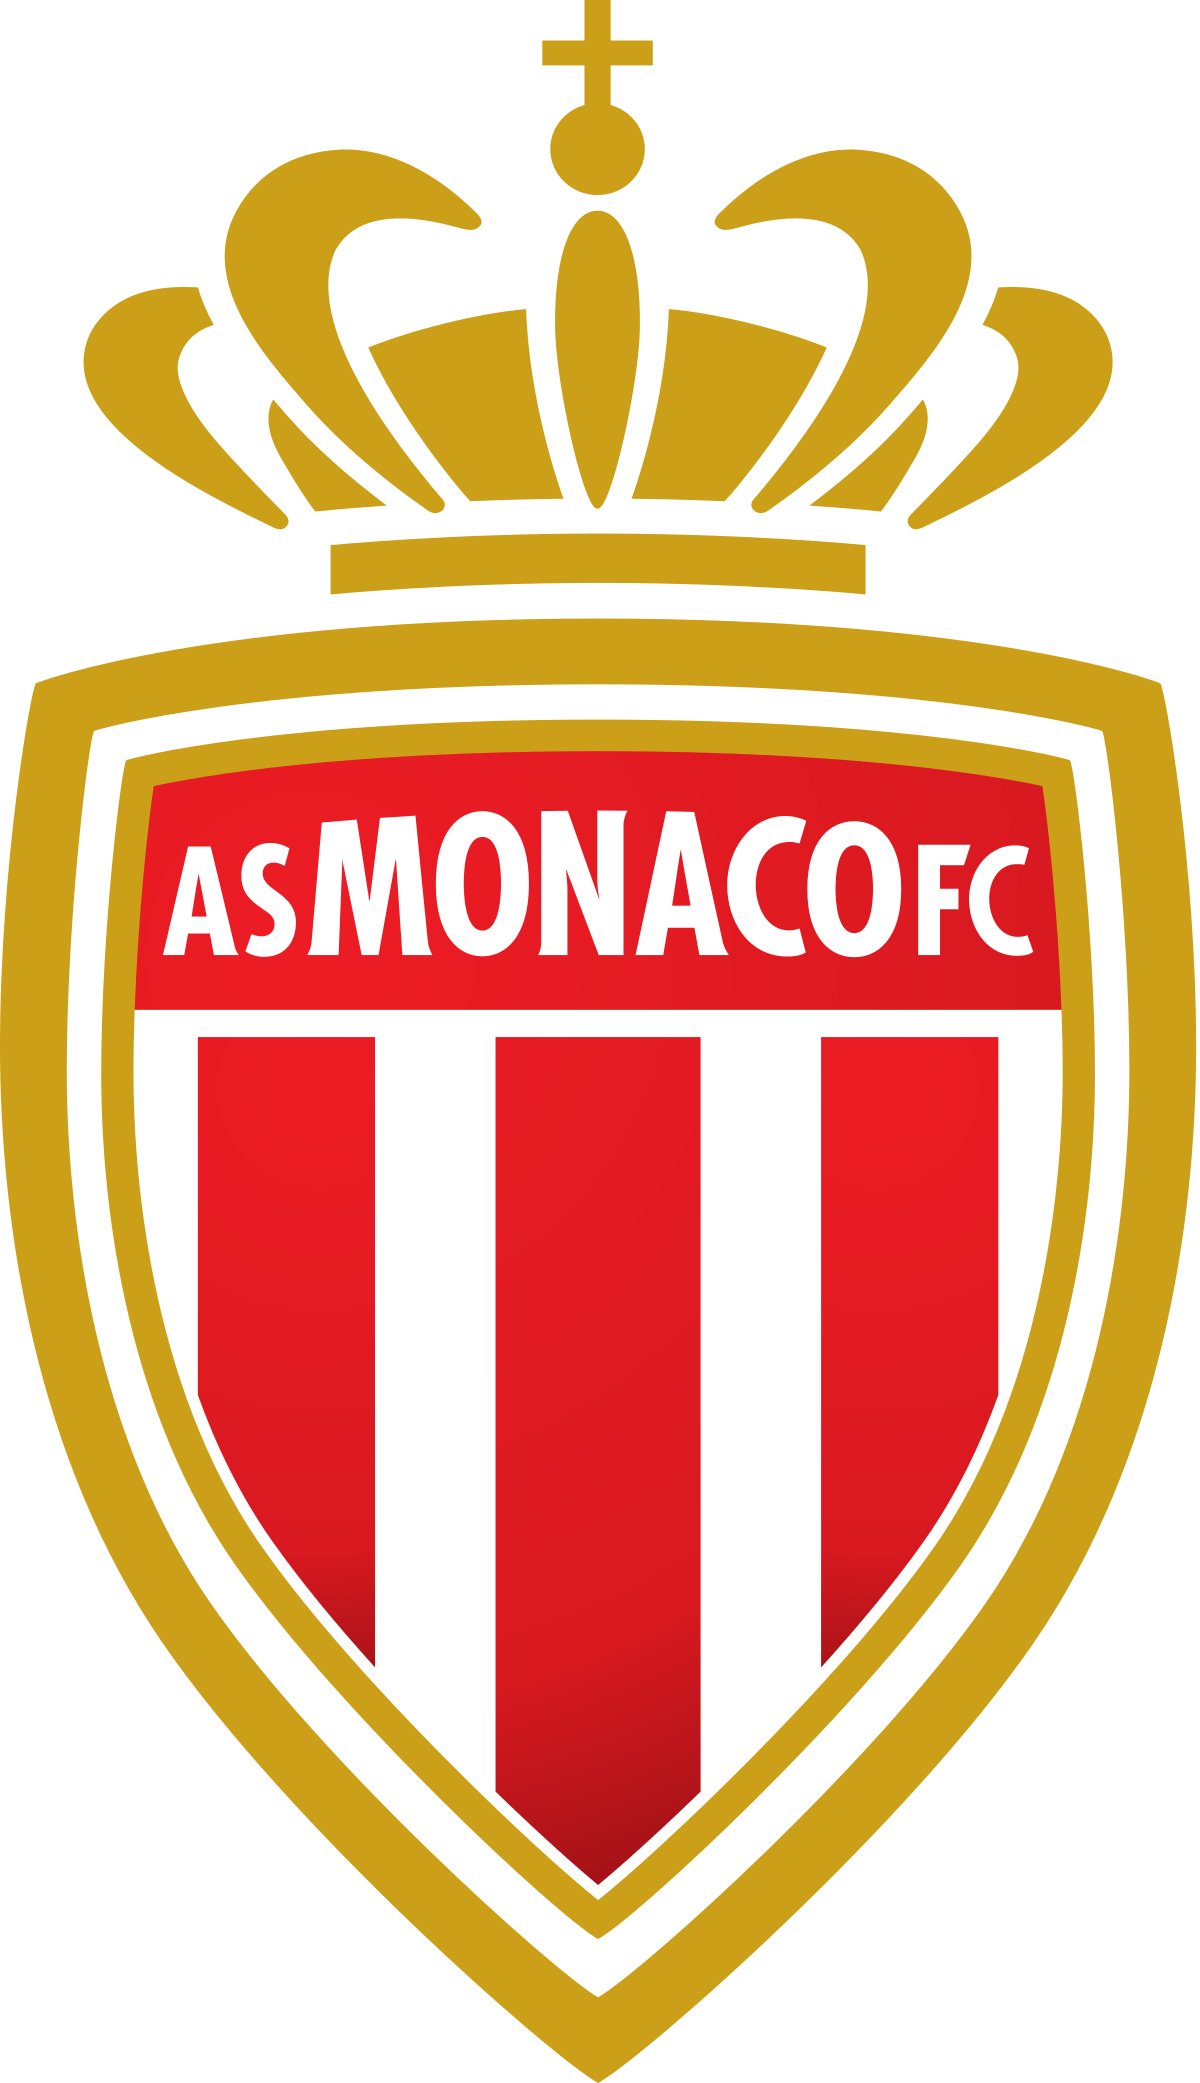 Monaco Logo - AS Monaco FC